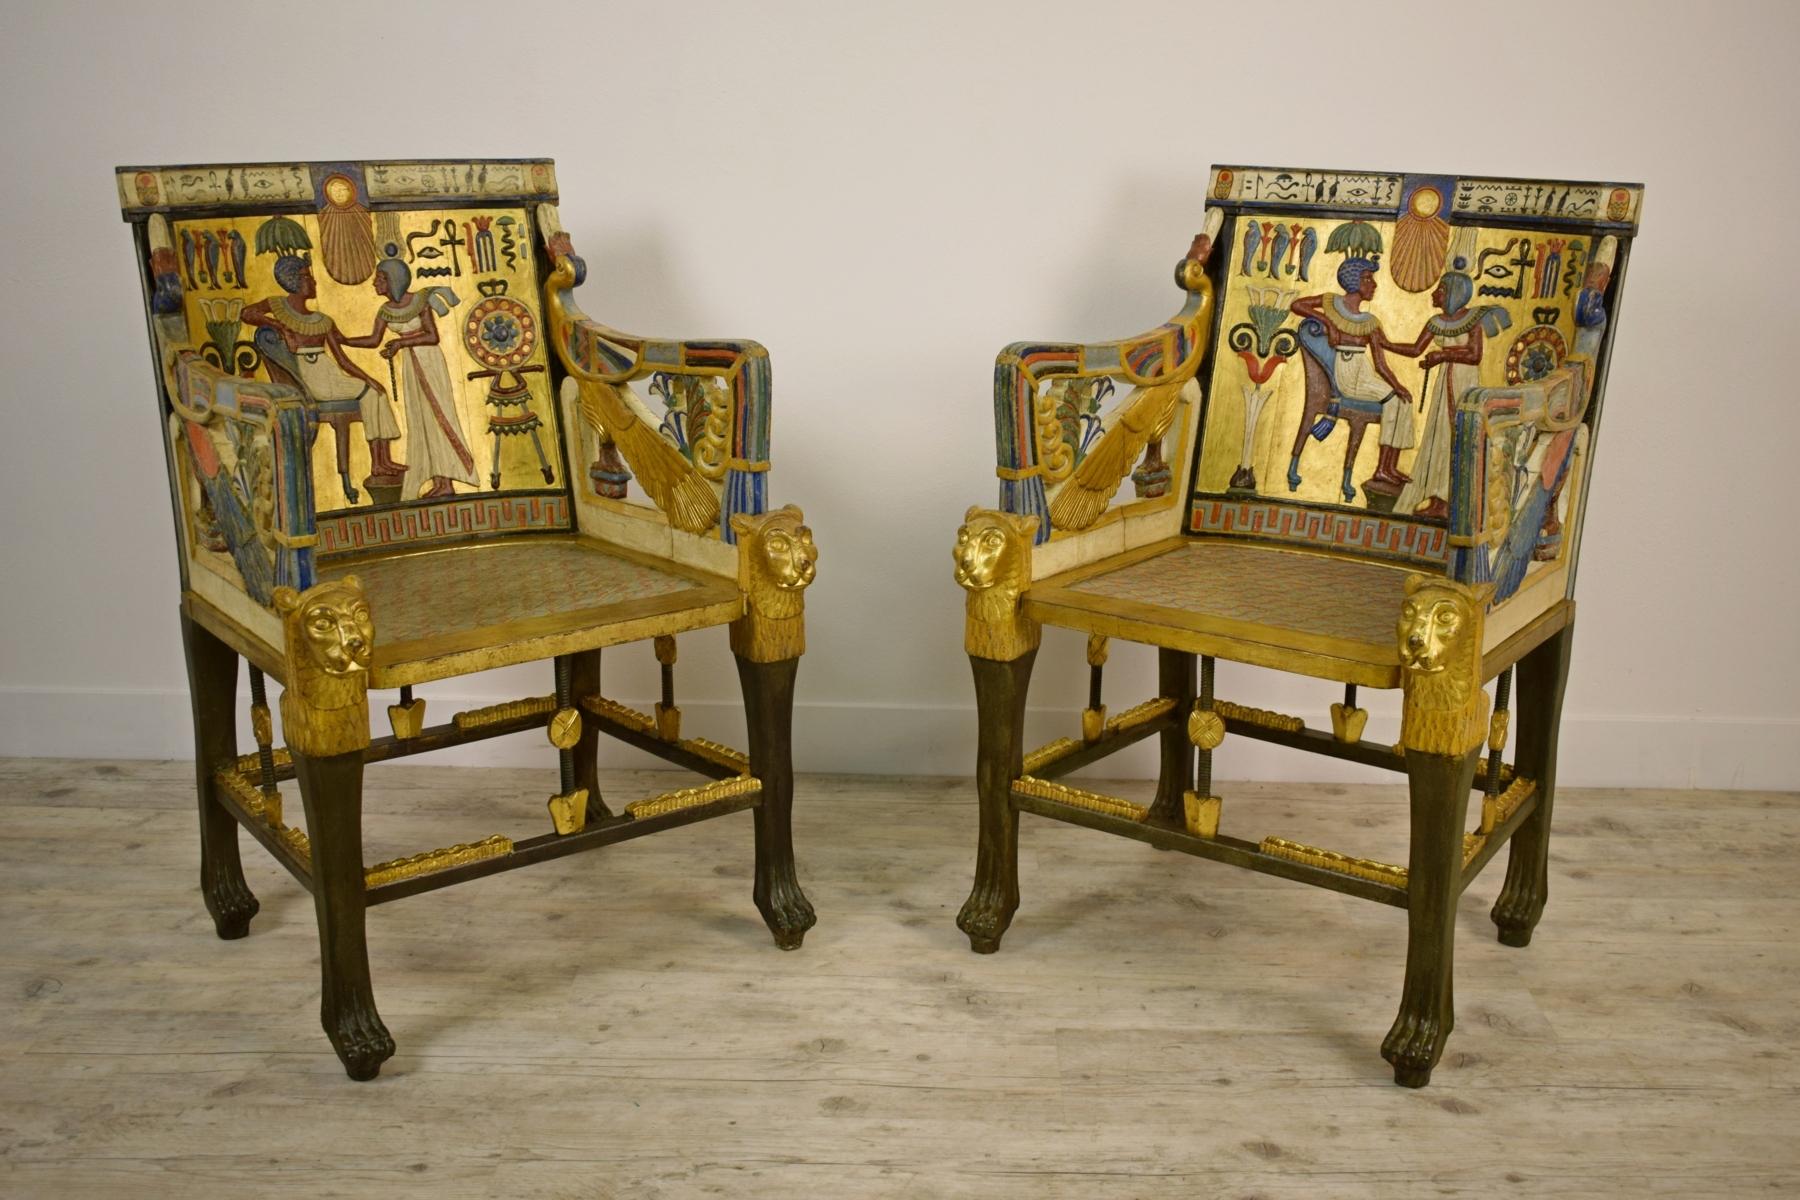 20. Jahrhundert, Paar lackierte Giltwood-Sessel im Stil der ägyptischen Wiedergeburt

Dieses besondere Sesselpaar aus geschnitztem Holz, lackiert und vergoldet, ist sehr hell und dekorativ. Die Sessel können in jedem Einrichtungskontext platziert